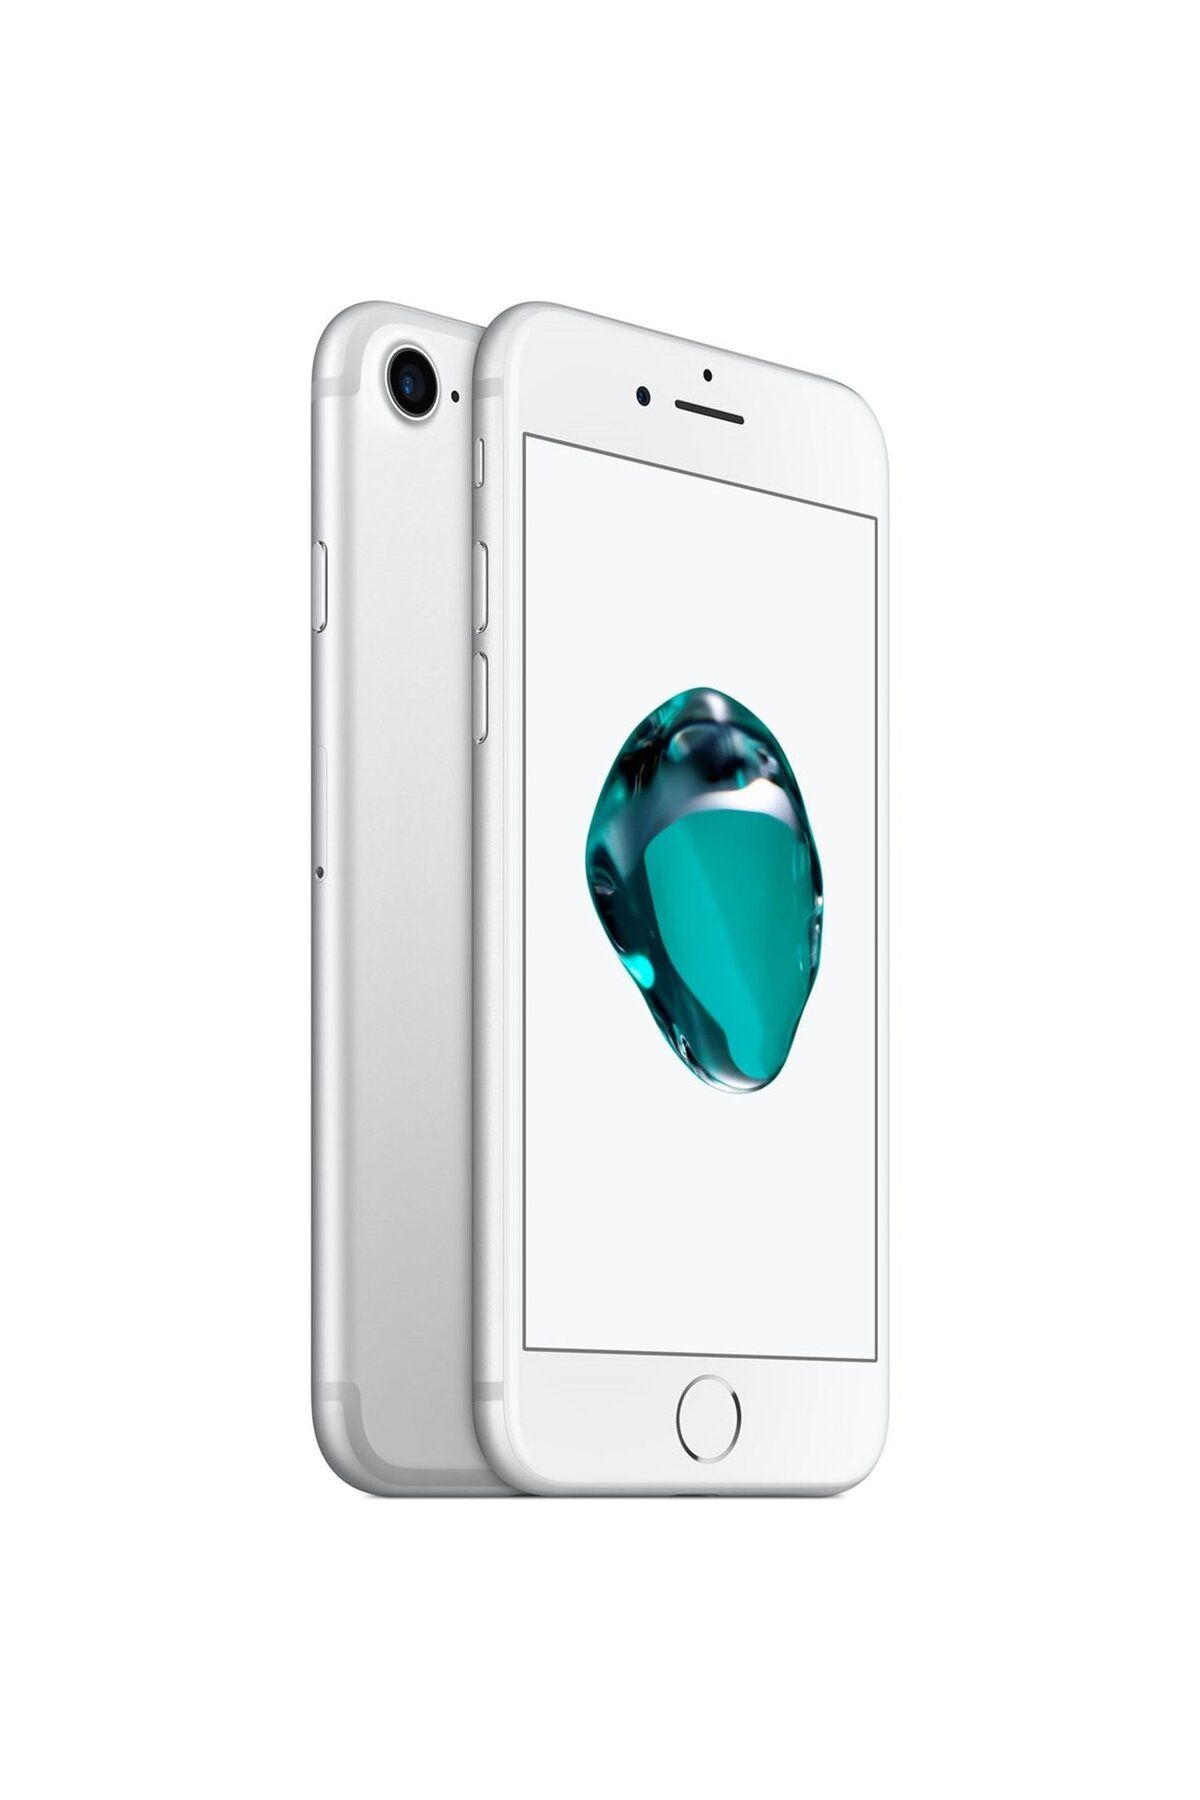 Apple Yenilenmiş Iphone 7 32gb Gümüş - B Kalite